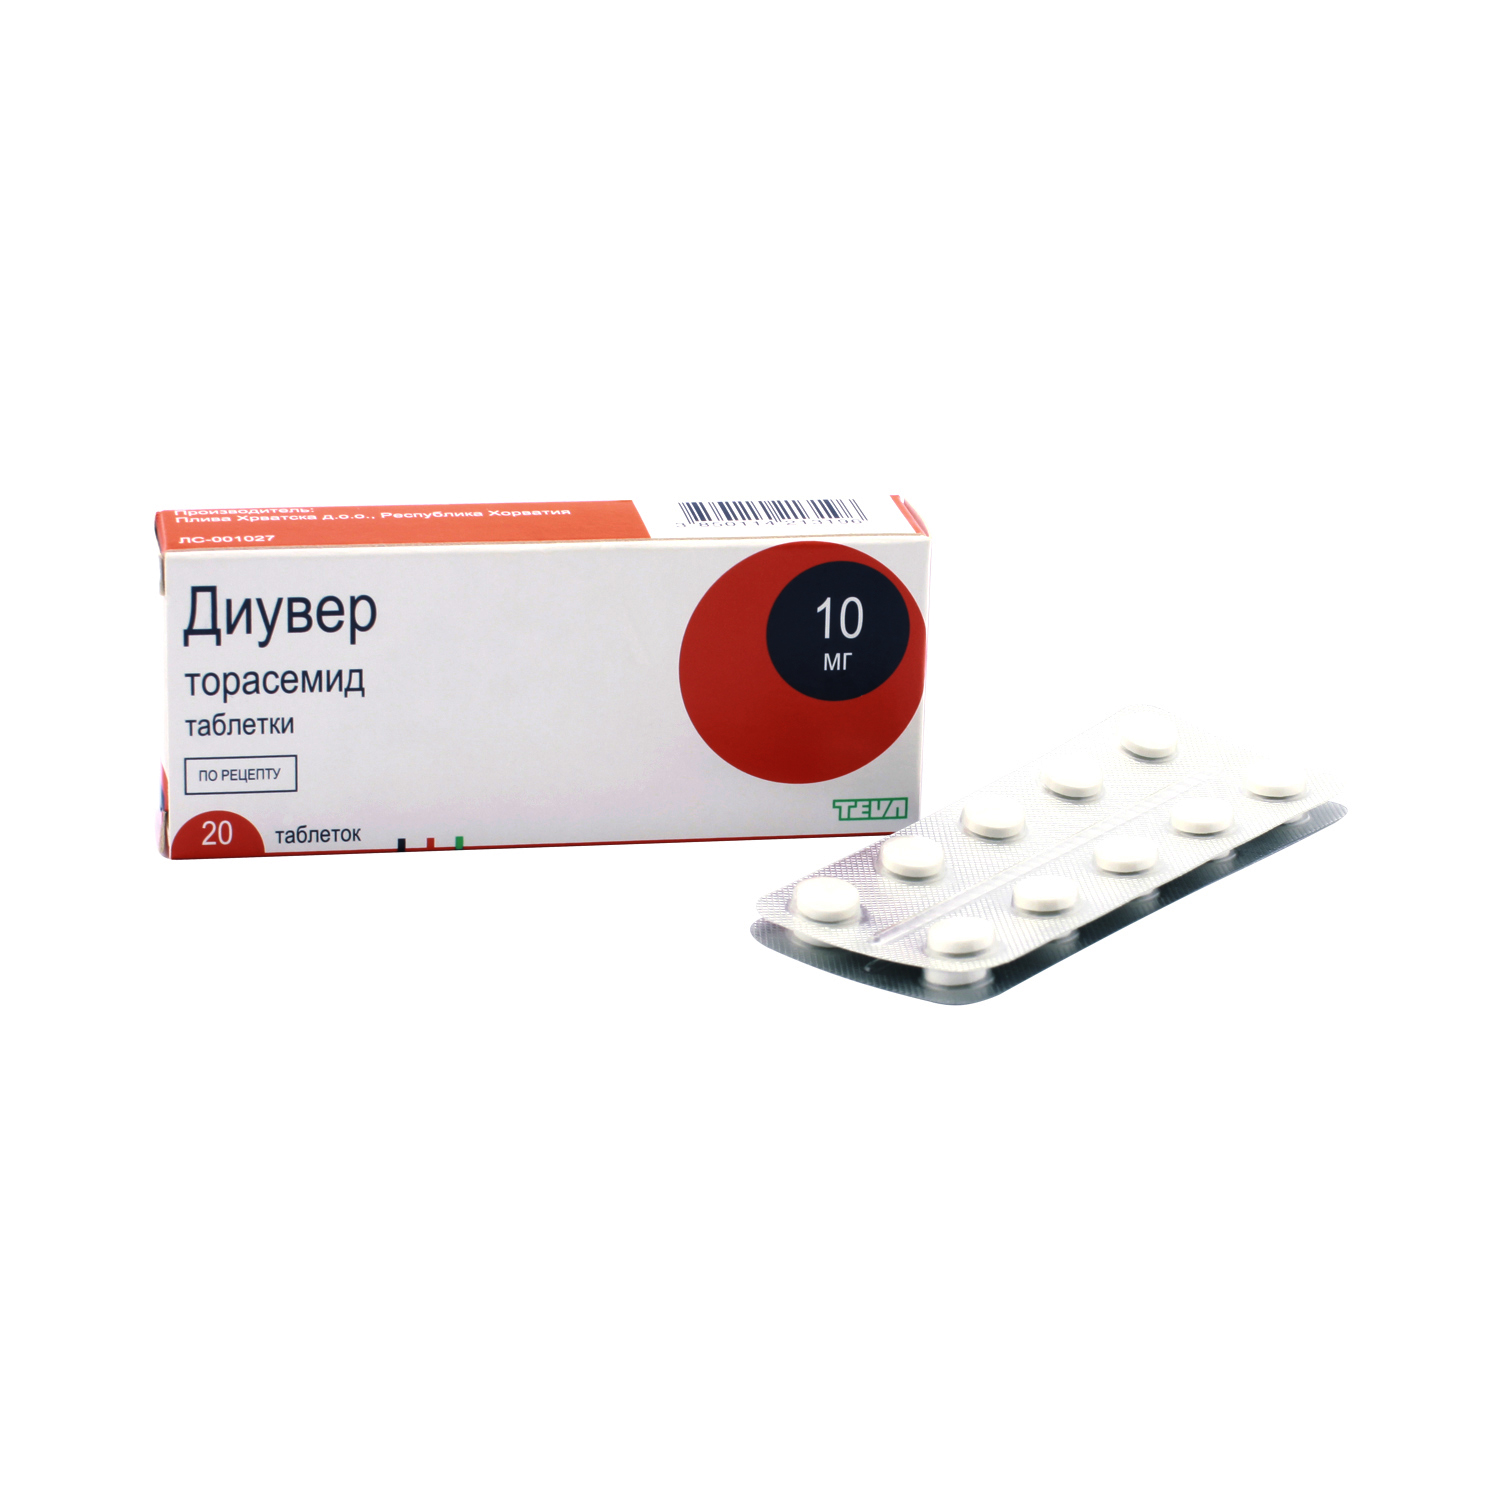 Диувер таблетки 10 мг 20 шт  по цене 587,0 руб в интернет-аптеке .